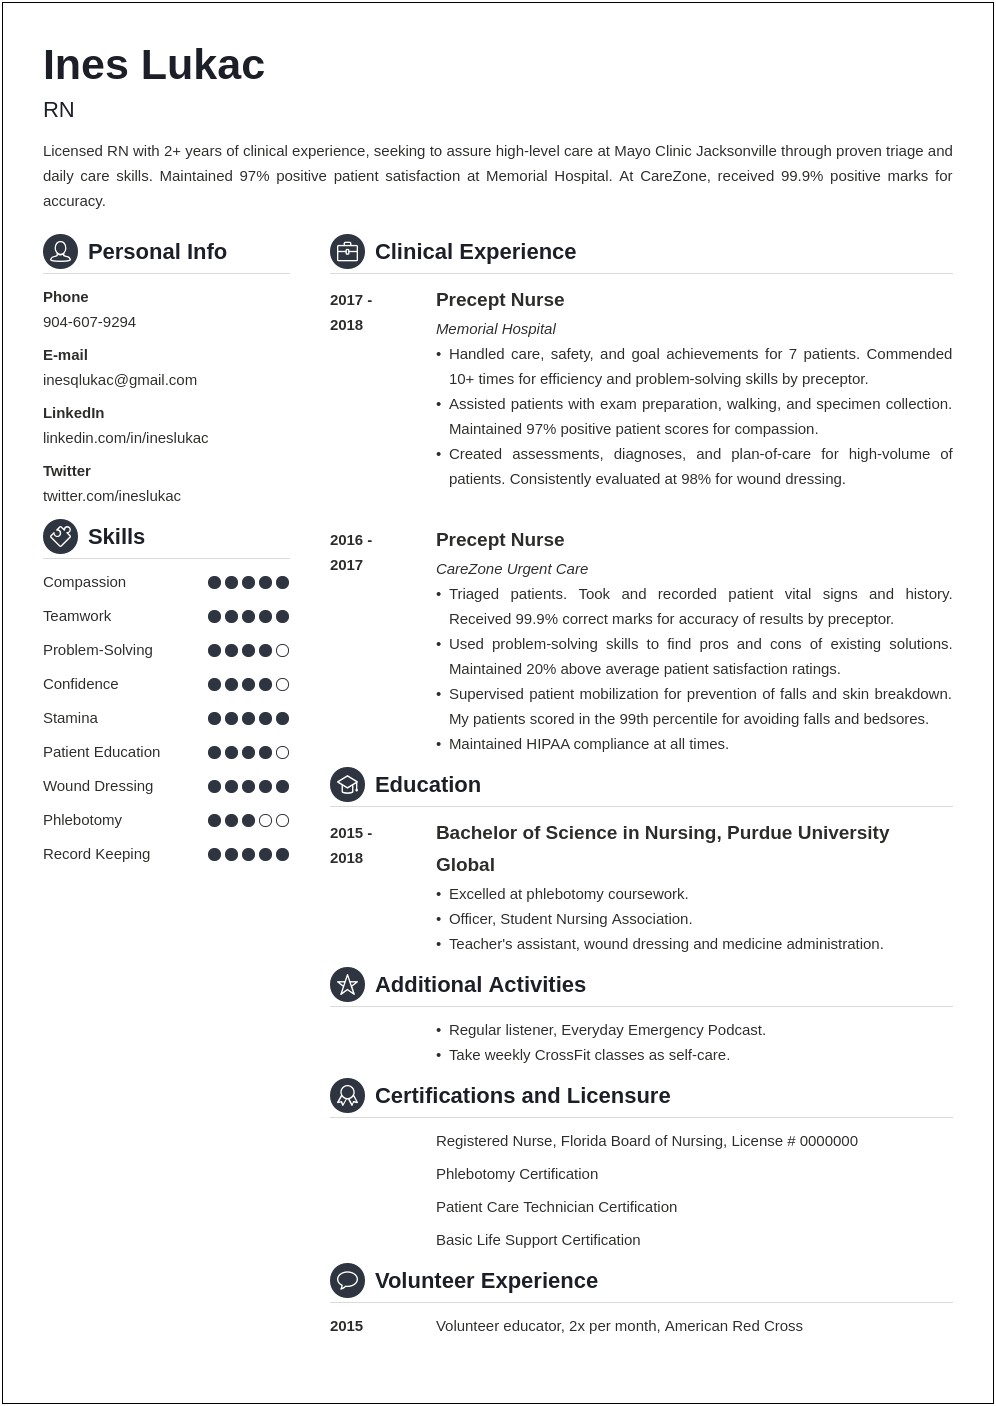 Sample Nursing School Application Resume